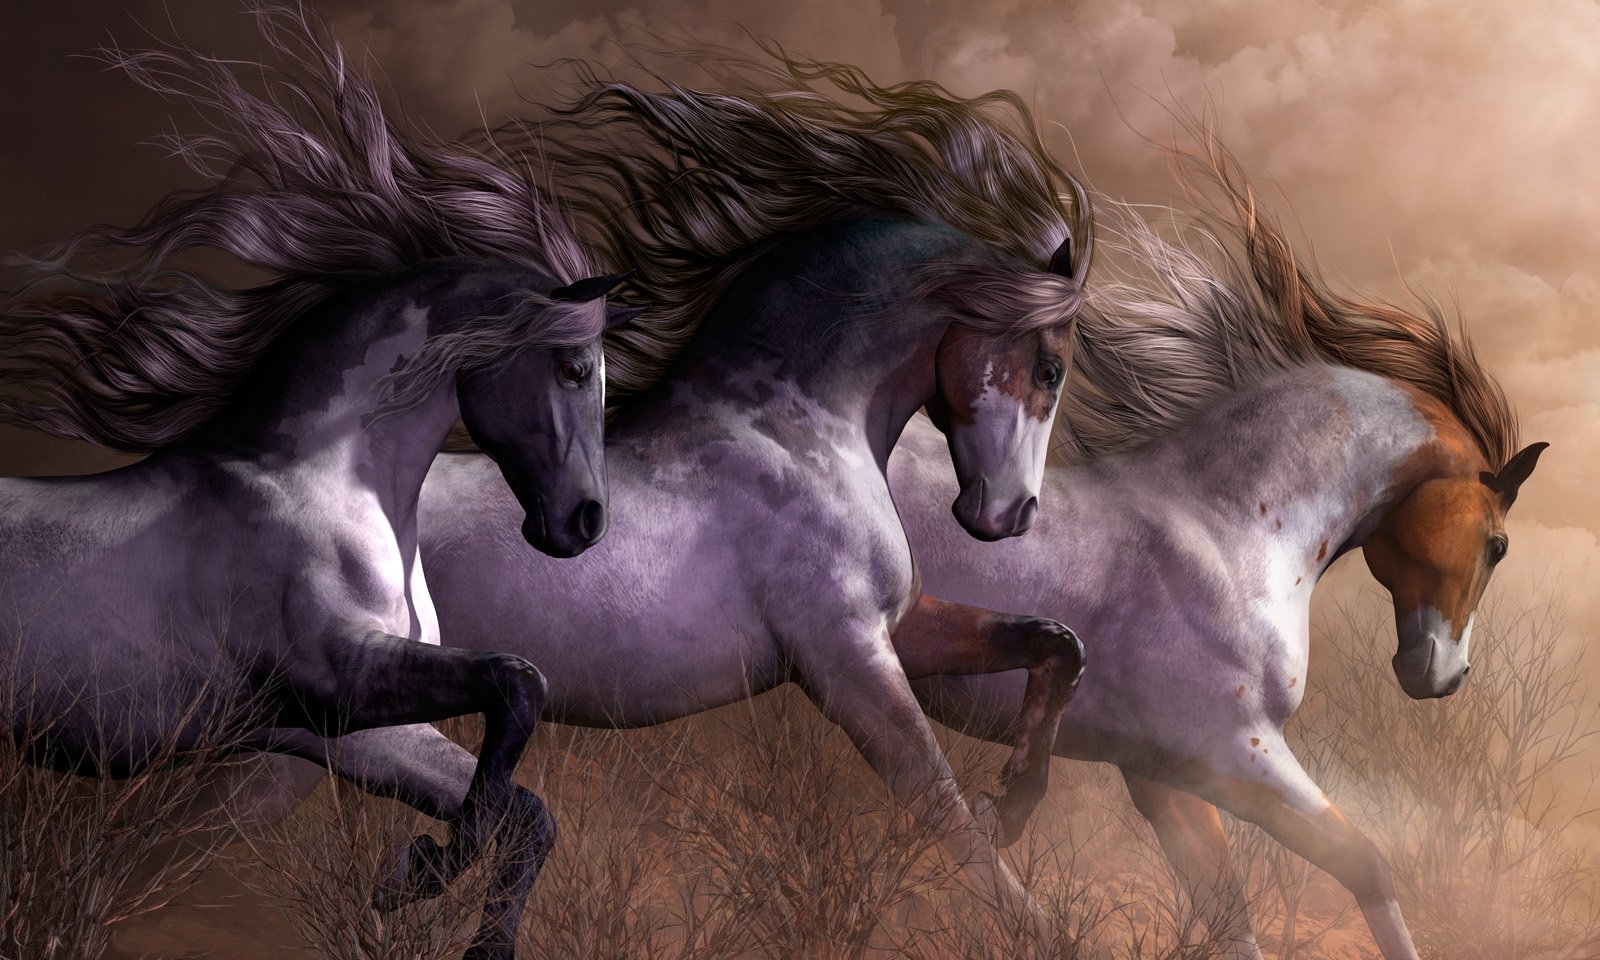 Beautiful Wild Horses wallpaper   ForWallpapercom 1600x960